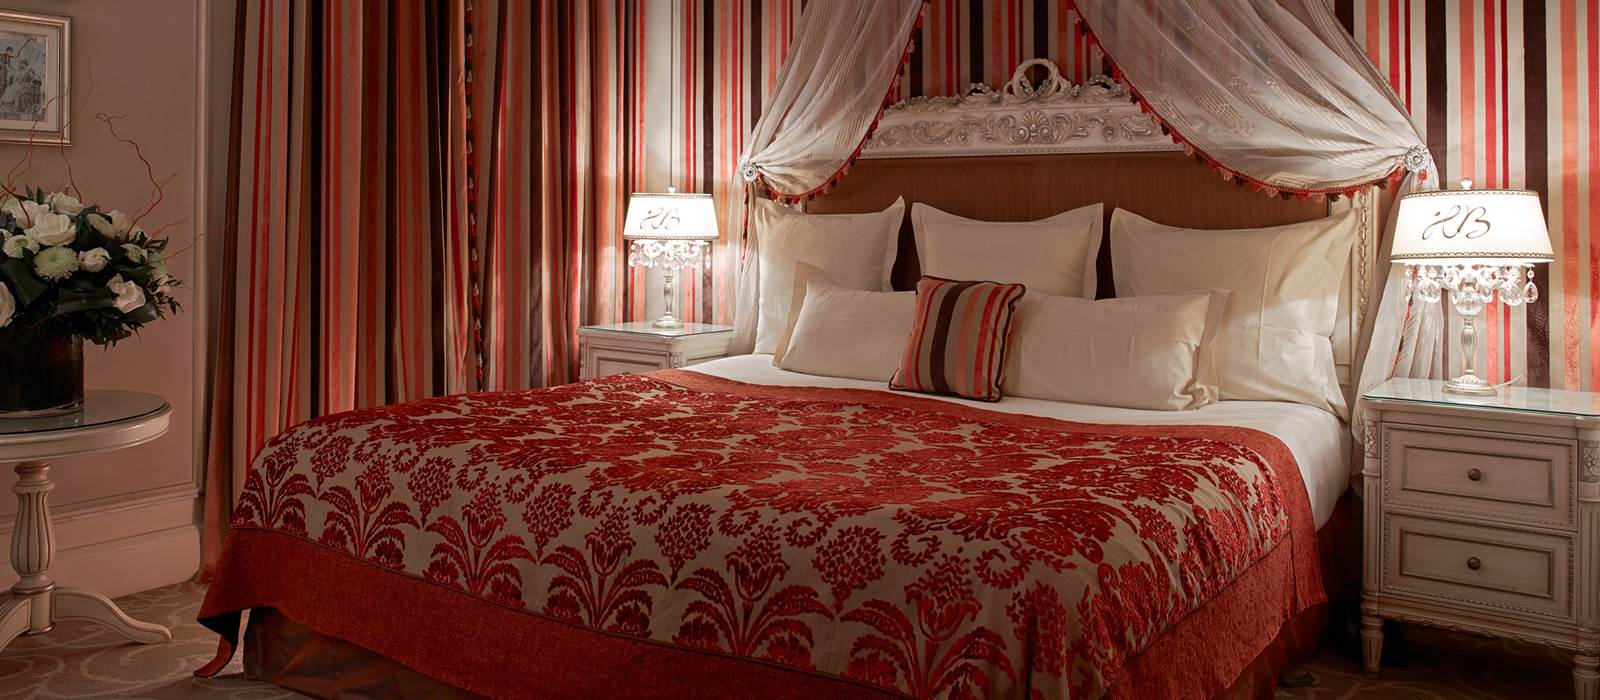 Executive & Deluxe Rooms Hotel Balzac